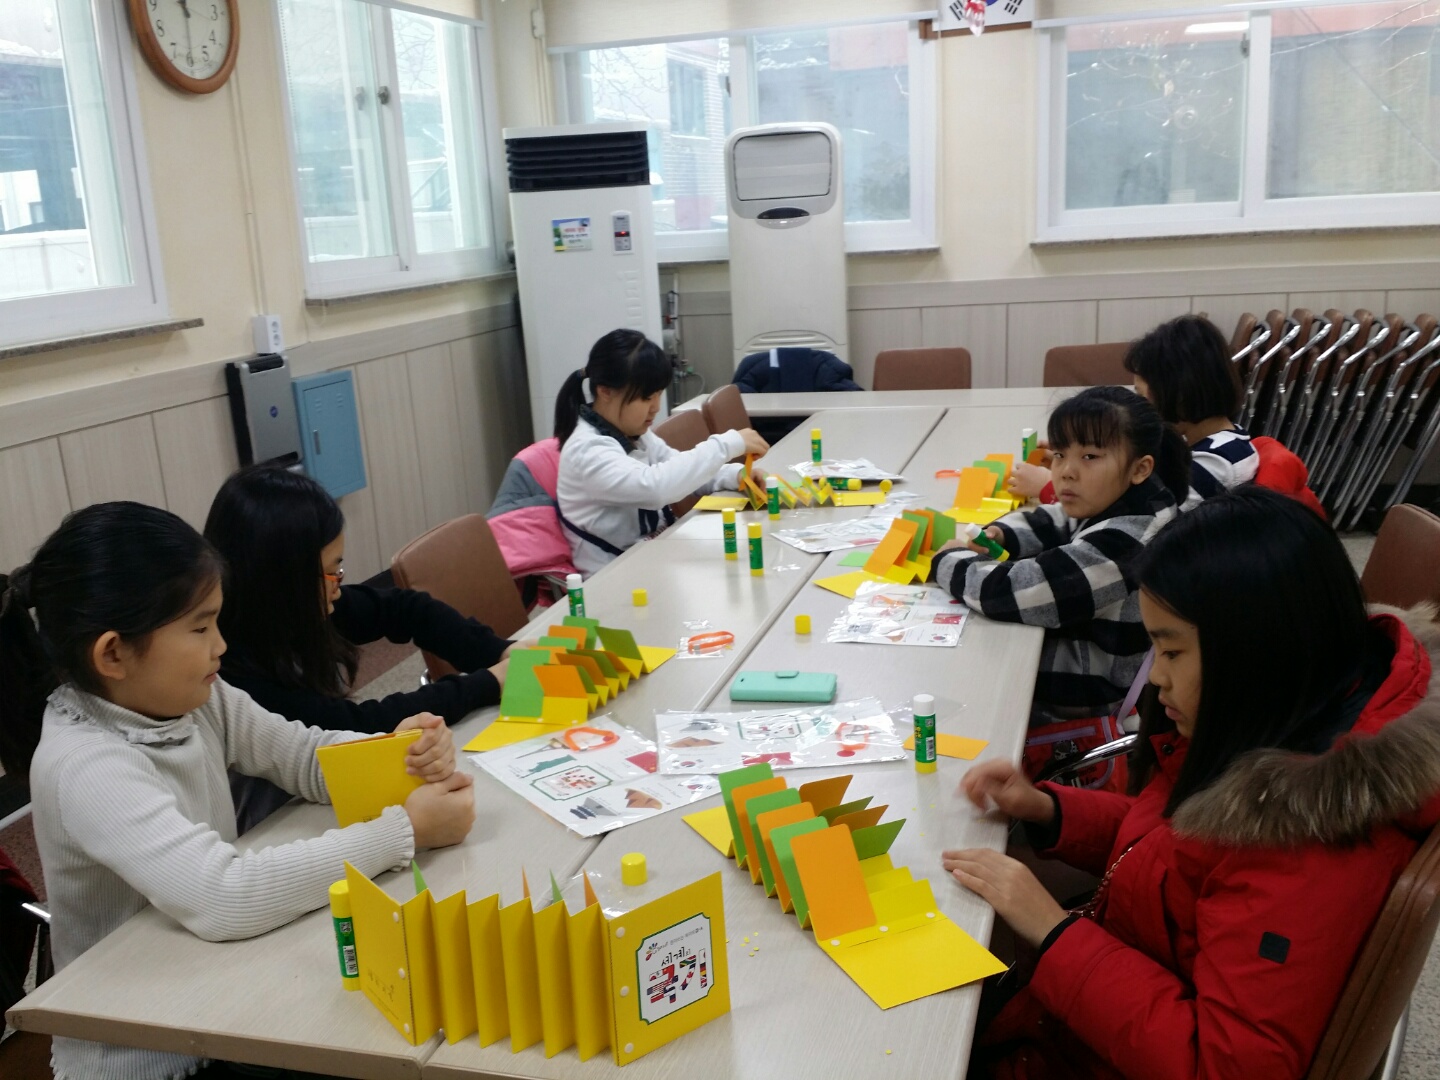 자치회관 겨울방학 특화 프로그램(북아트)